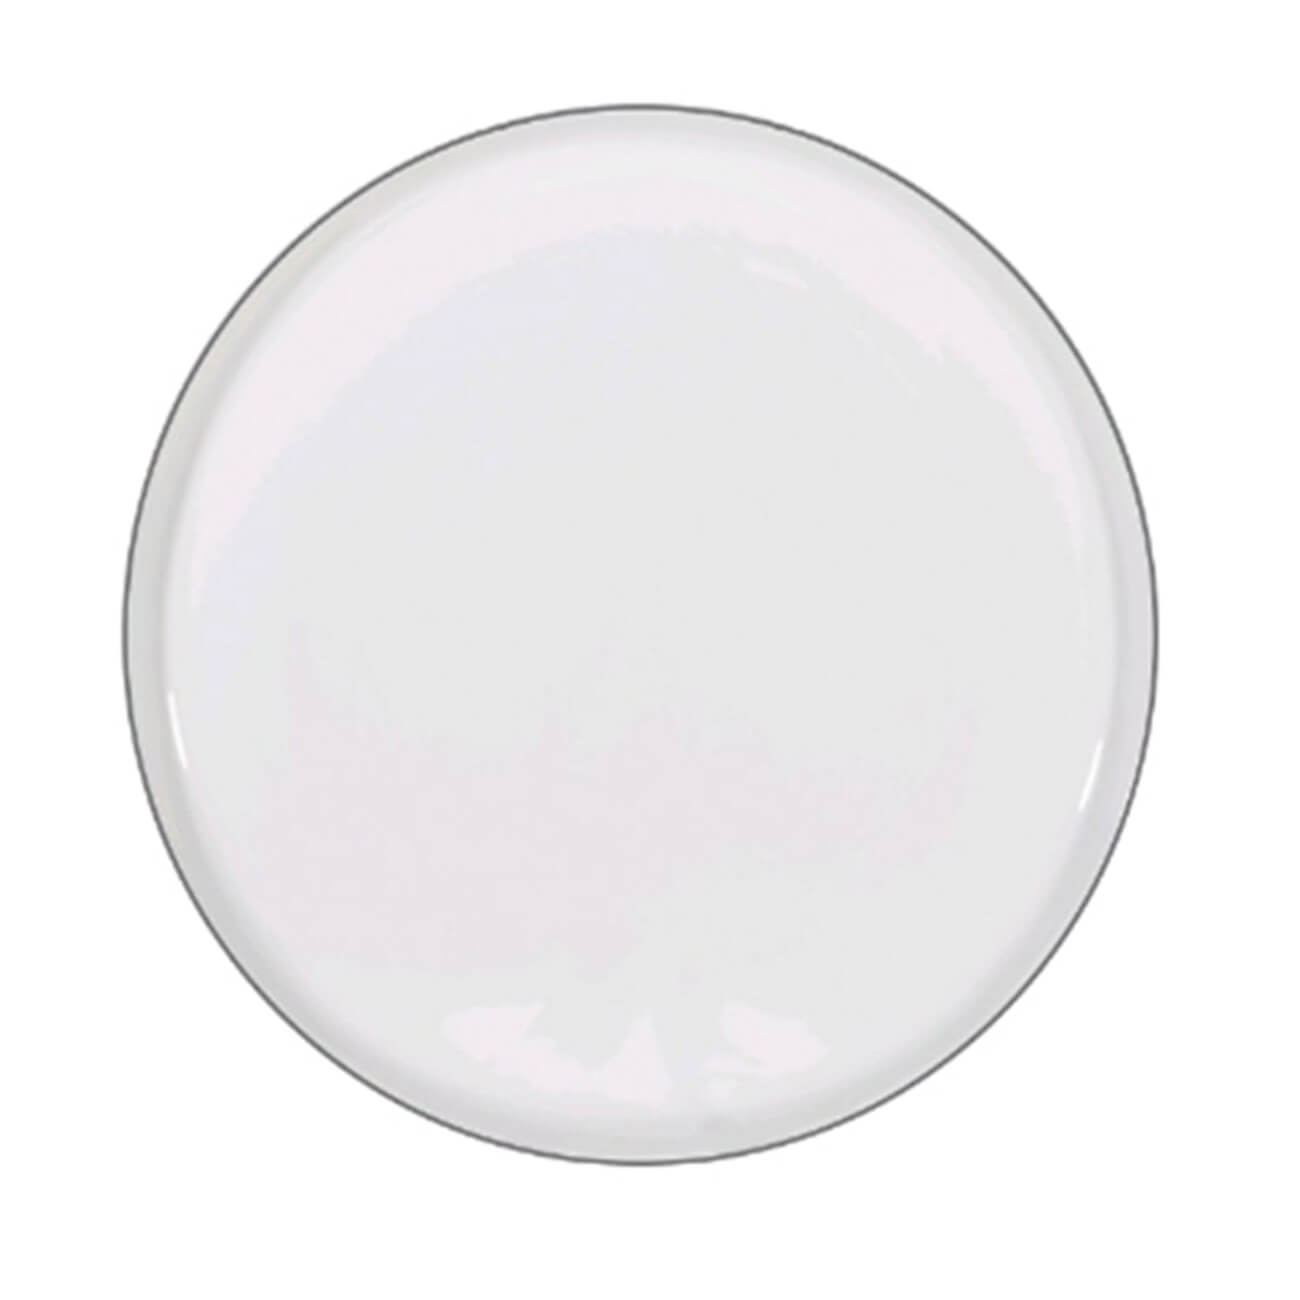 Тарелка десертная, 20 см, 2 шт, фарфор F, белая, Ideal silver тарелка десертная golden opal pink helen волна 19 5 см